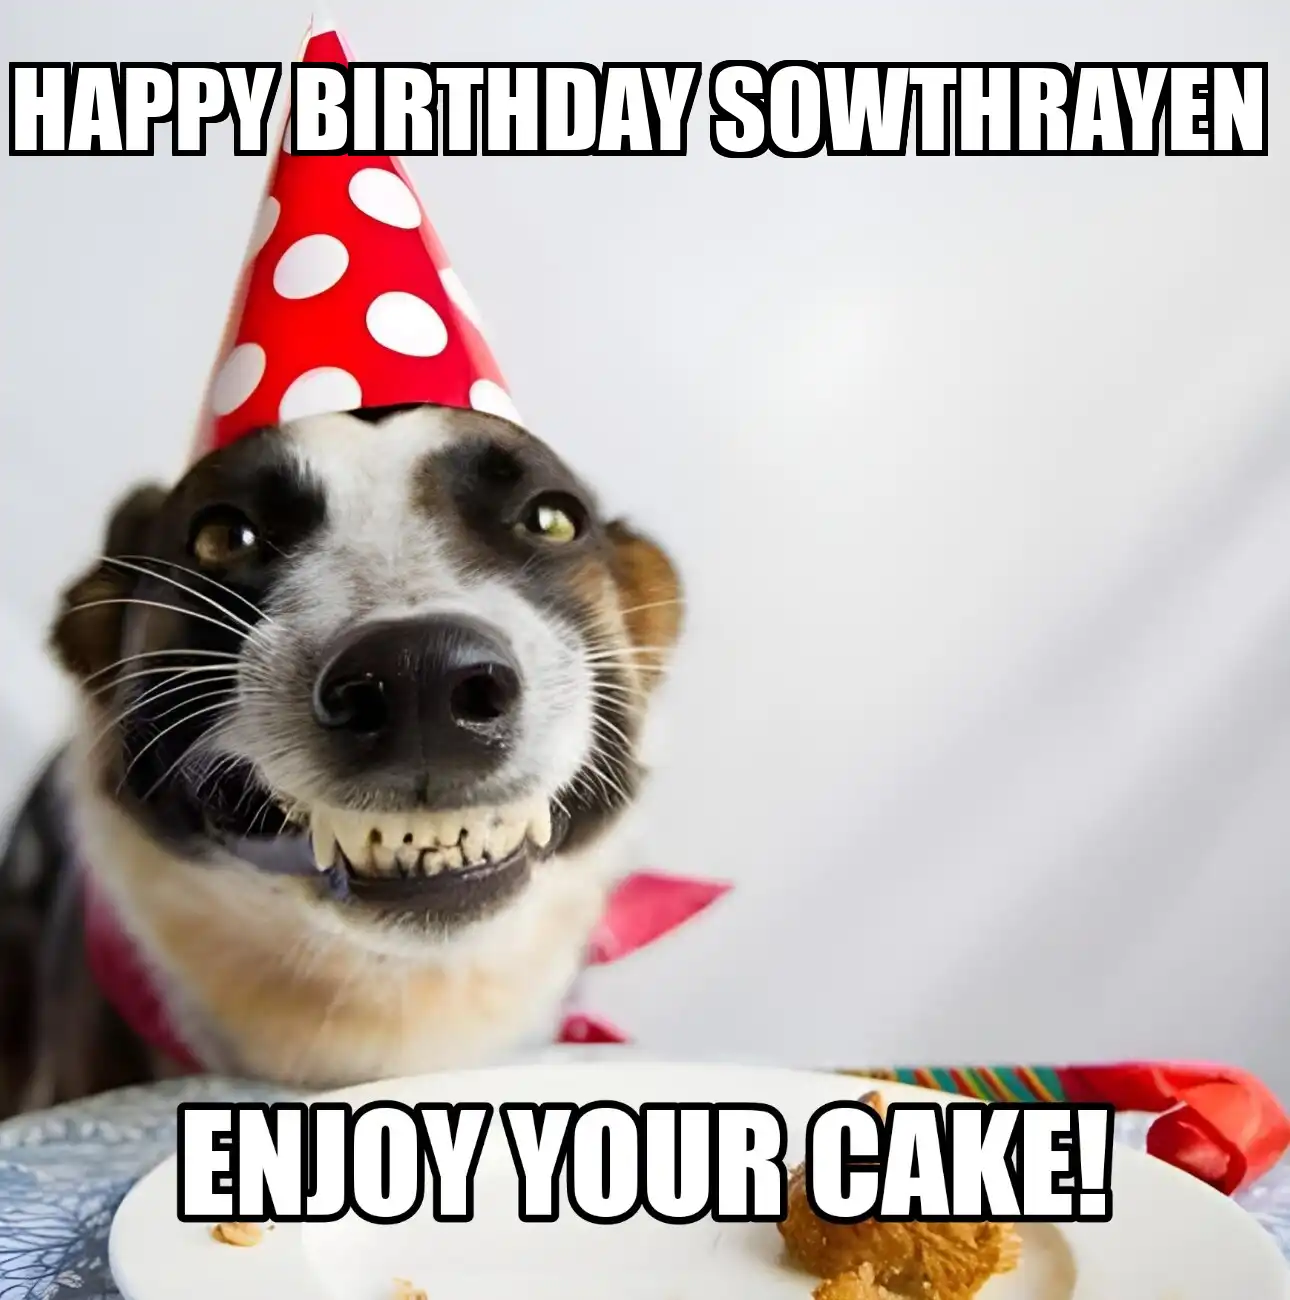 Happy Birthday Sowthrayen Enjoy Your Cake Dog Meme